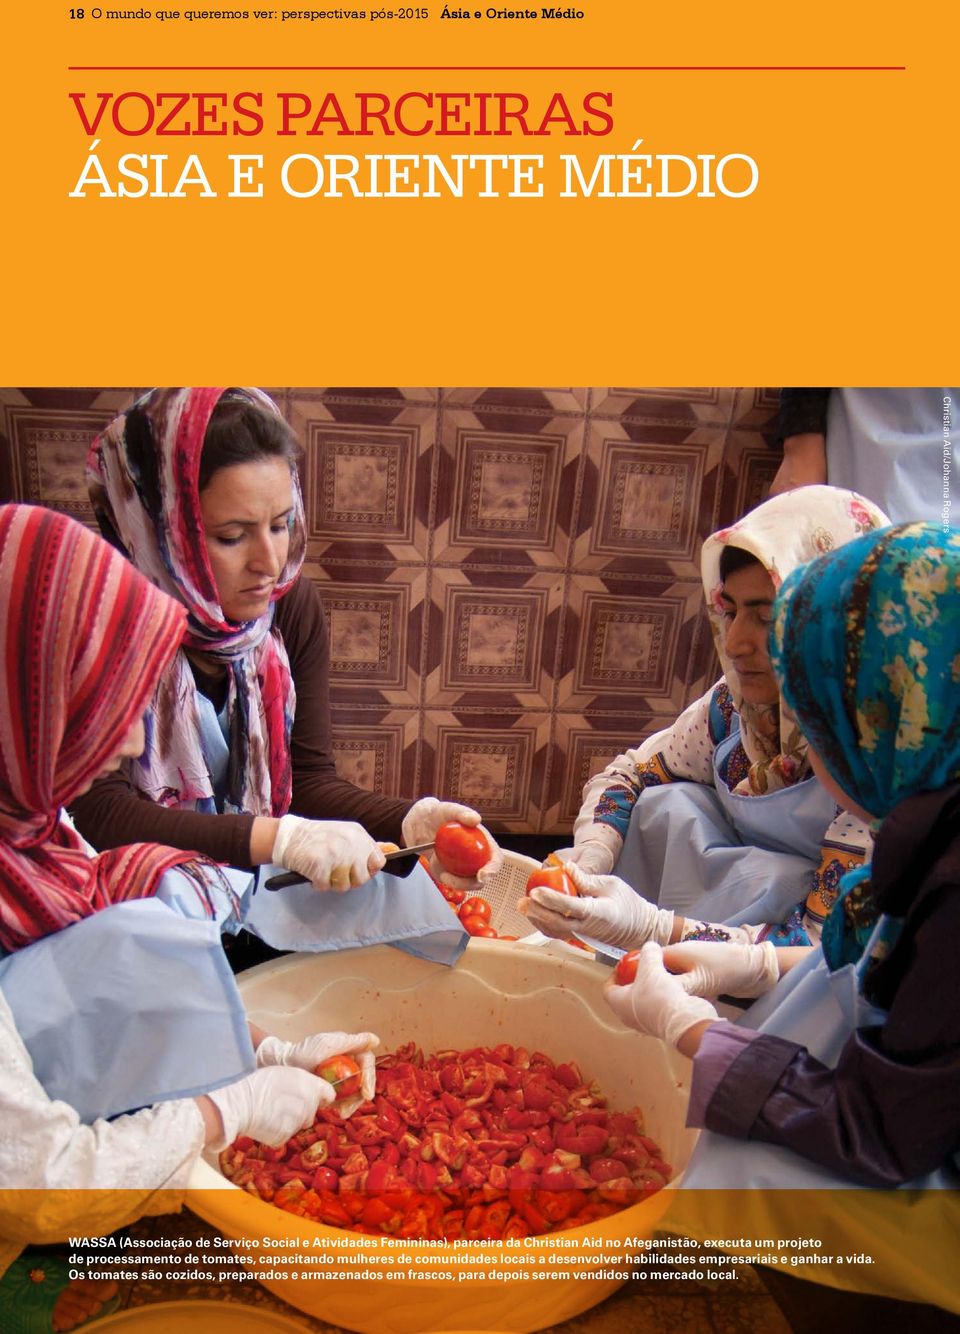 executa um projeto de processamento de tomates, capacitando mulheres de comunidades locais a desenvolver habilidades